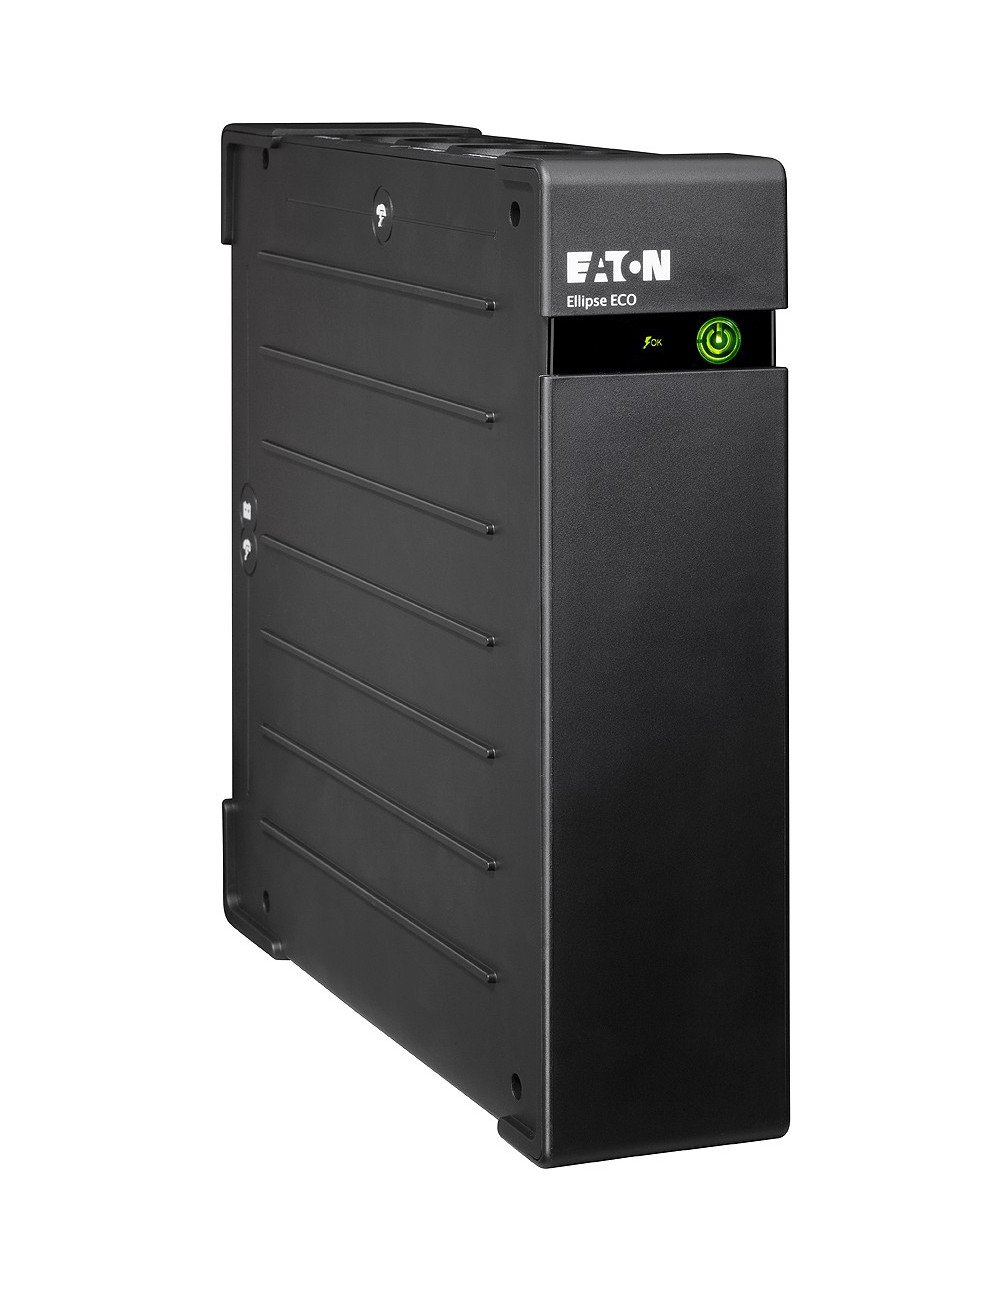 Eaton Ellipse ECO 1600 USB FR sistema de alimentación ininterrumpida (UPS) En espera (Fuera de línea) o Standby (Offline) 1,6